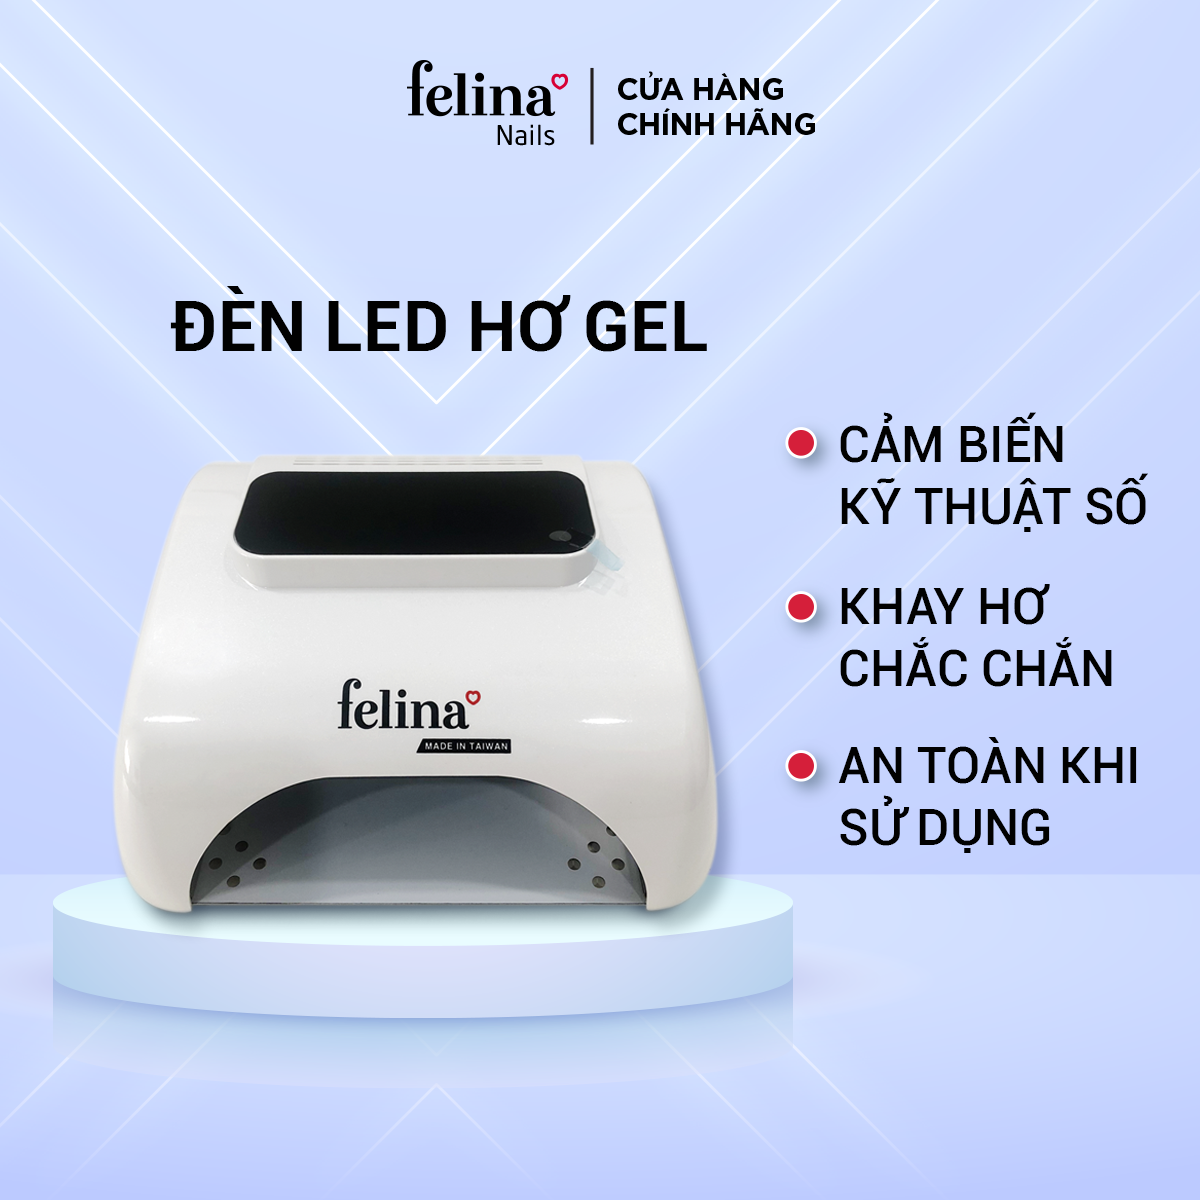  Đèn LED hơ gel 36 Watt Felina chính hãng, an toàn gọn nhẹ không ảnh hưởng đến da tay hoặc gây hại cho mắt 